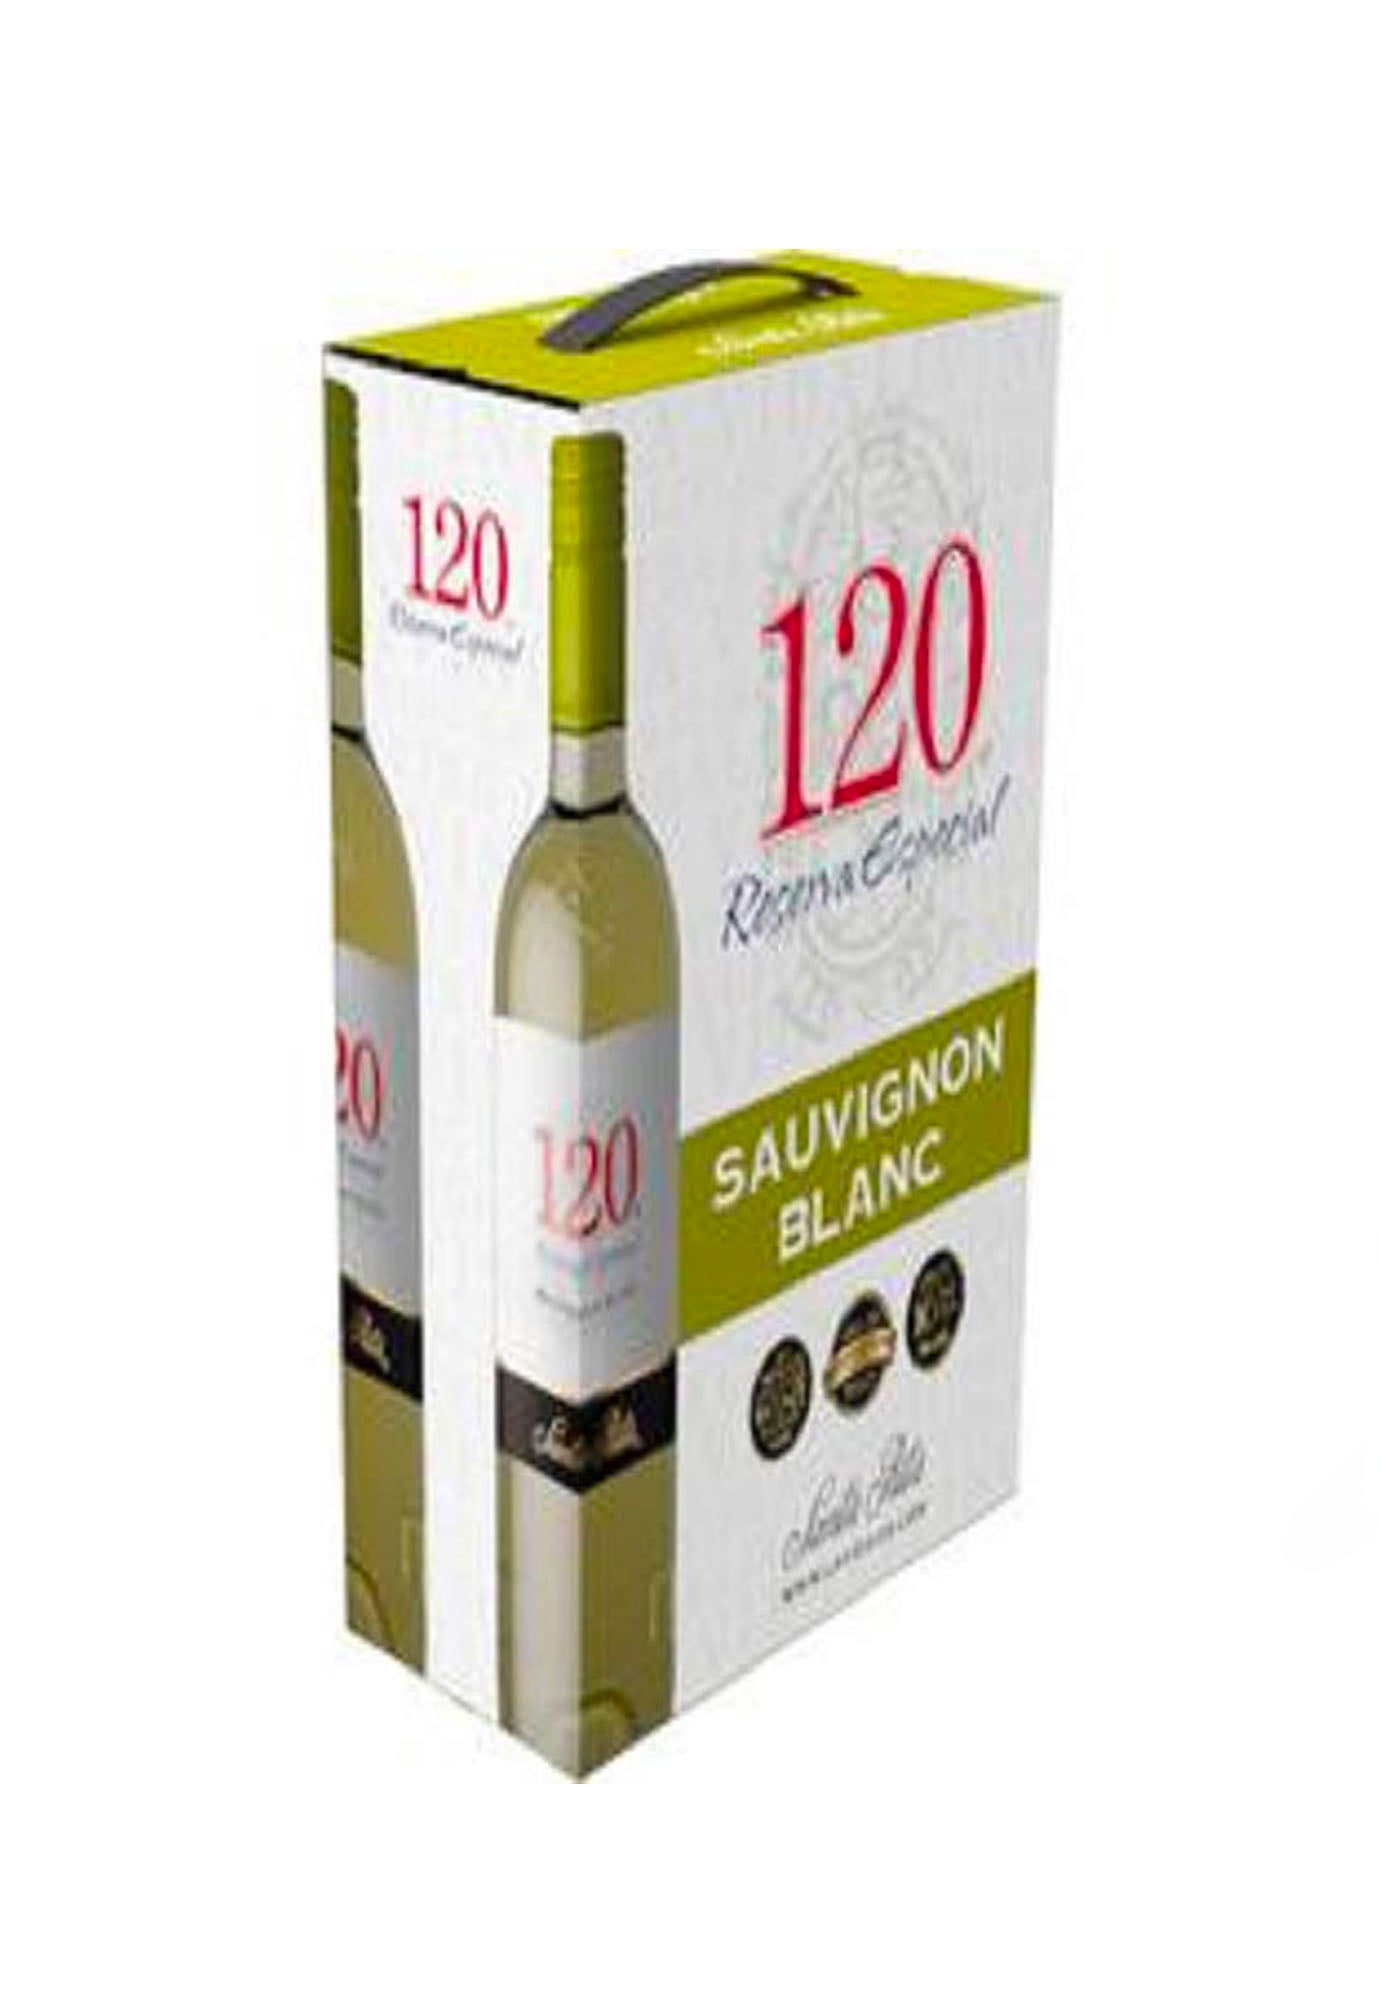 Santa Rita 120 Sauvignon Blanc - 3 Litre Box